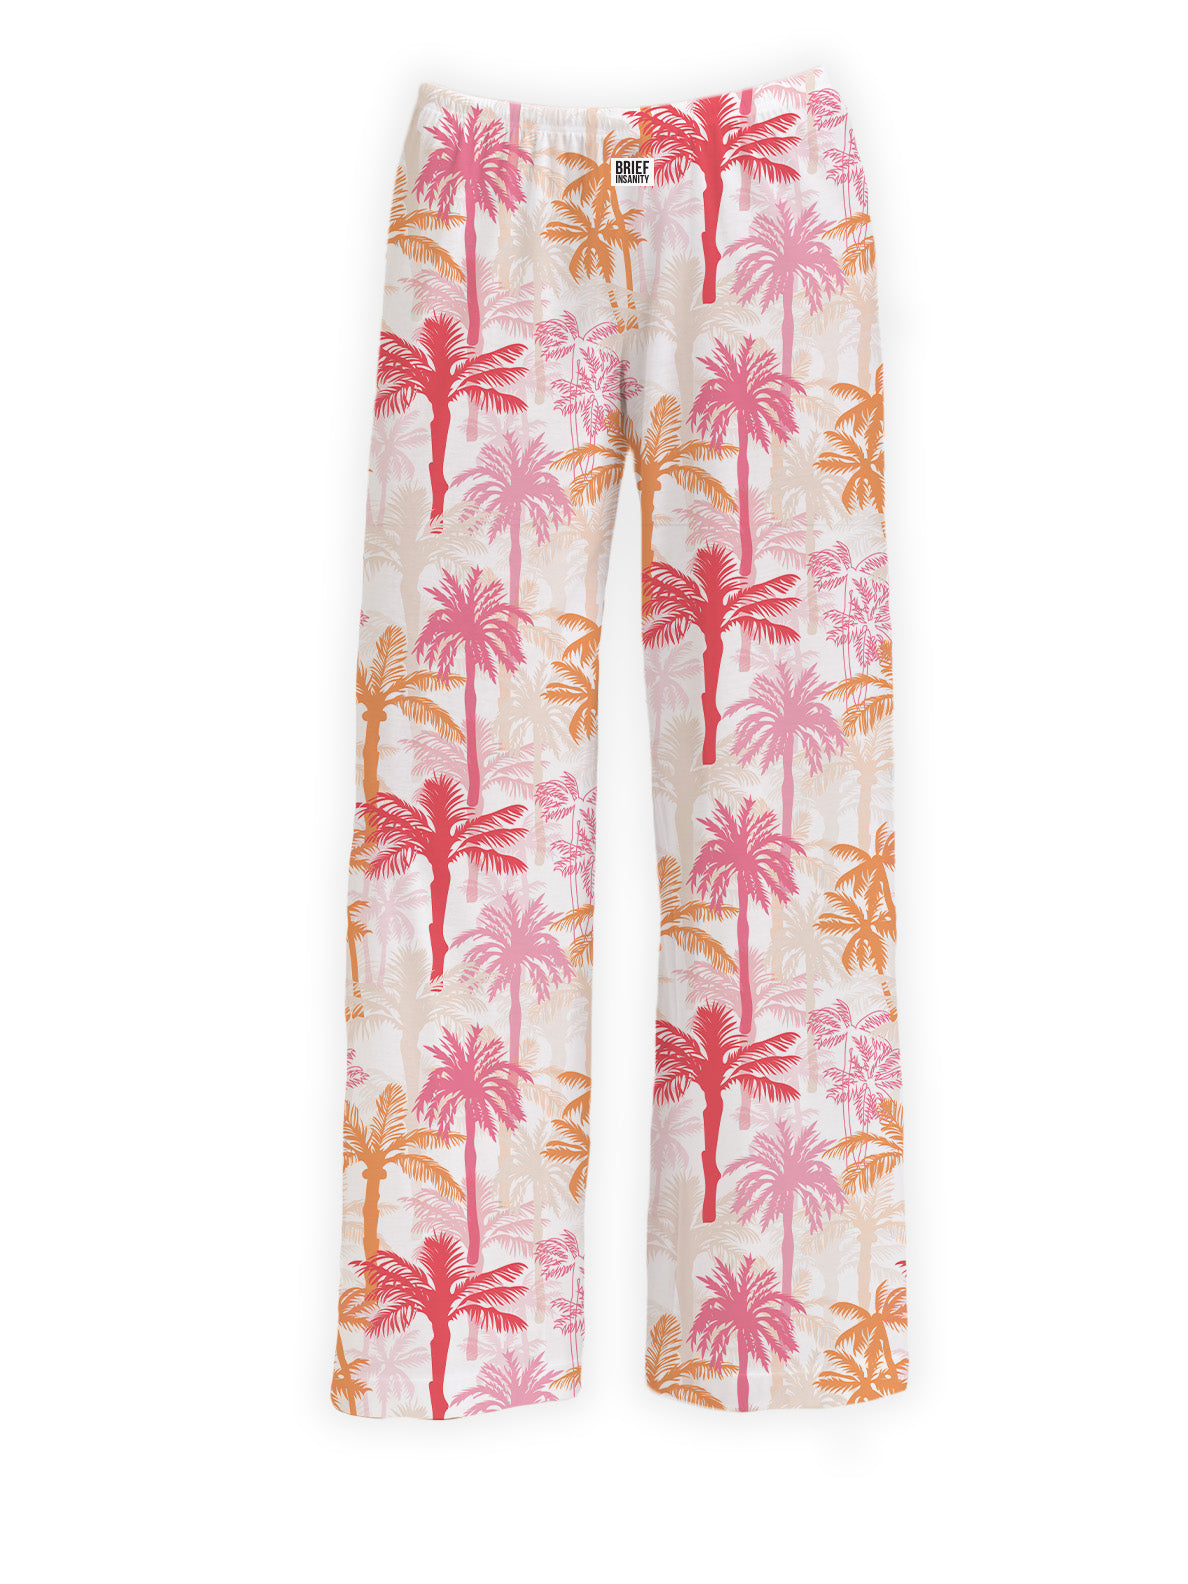 BRIEF INSANITY's Pink Palm Tree Pajama Lounge Pants